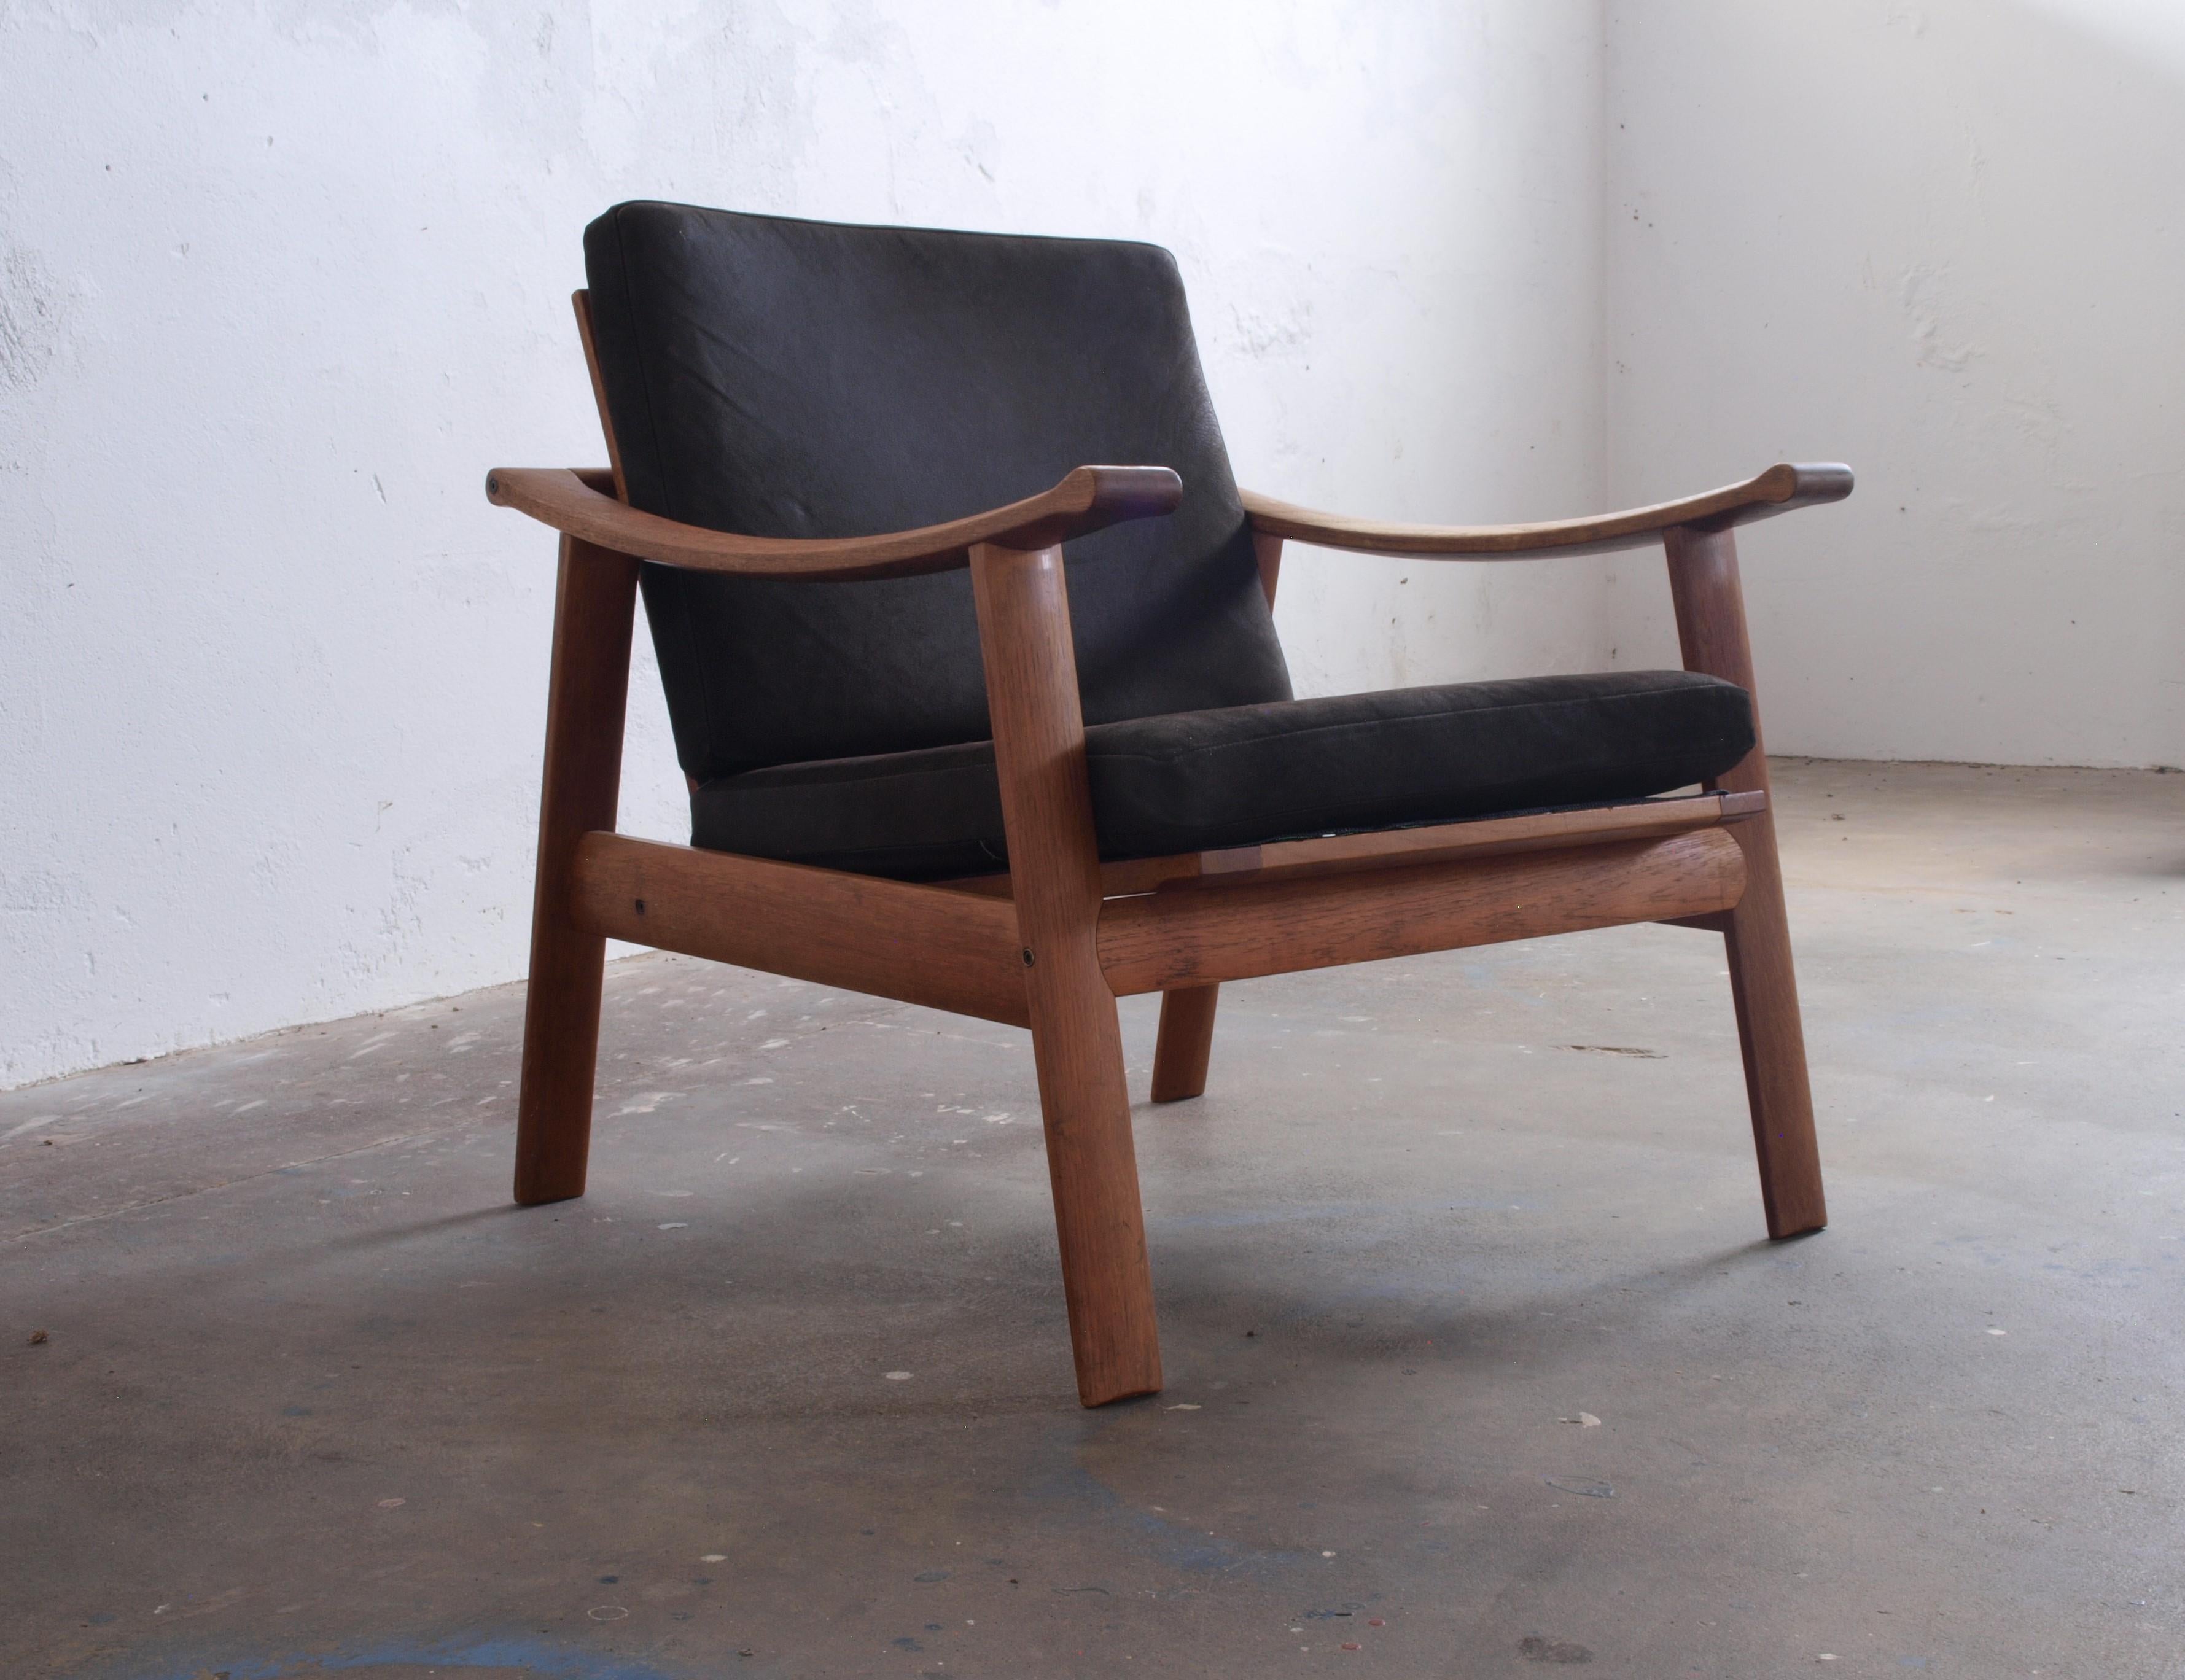 Danish Spade Chairs in Teak in the style of Finn Juhl, 1960s For Sale 1